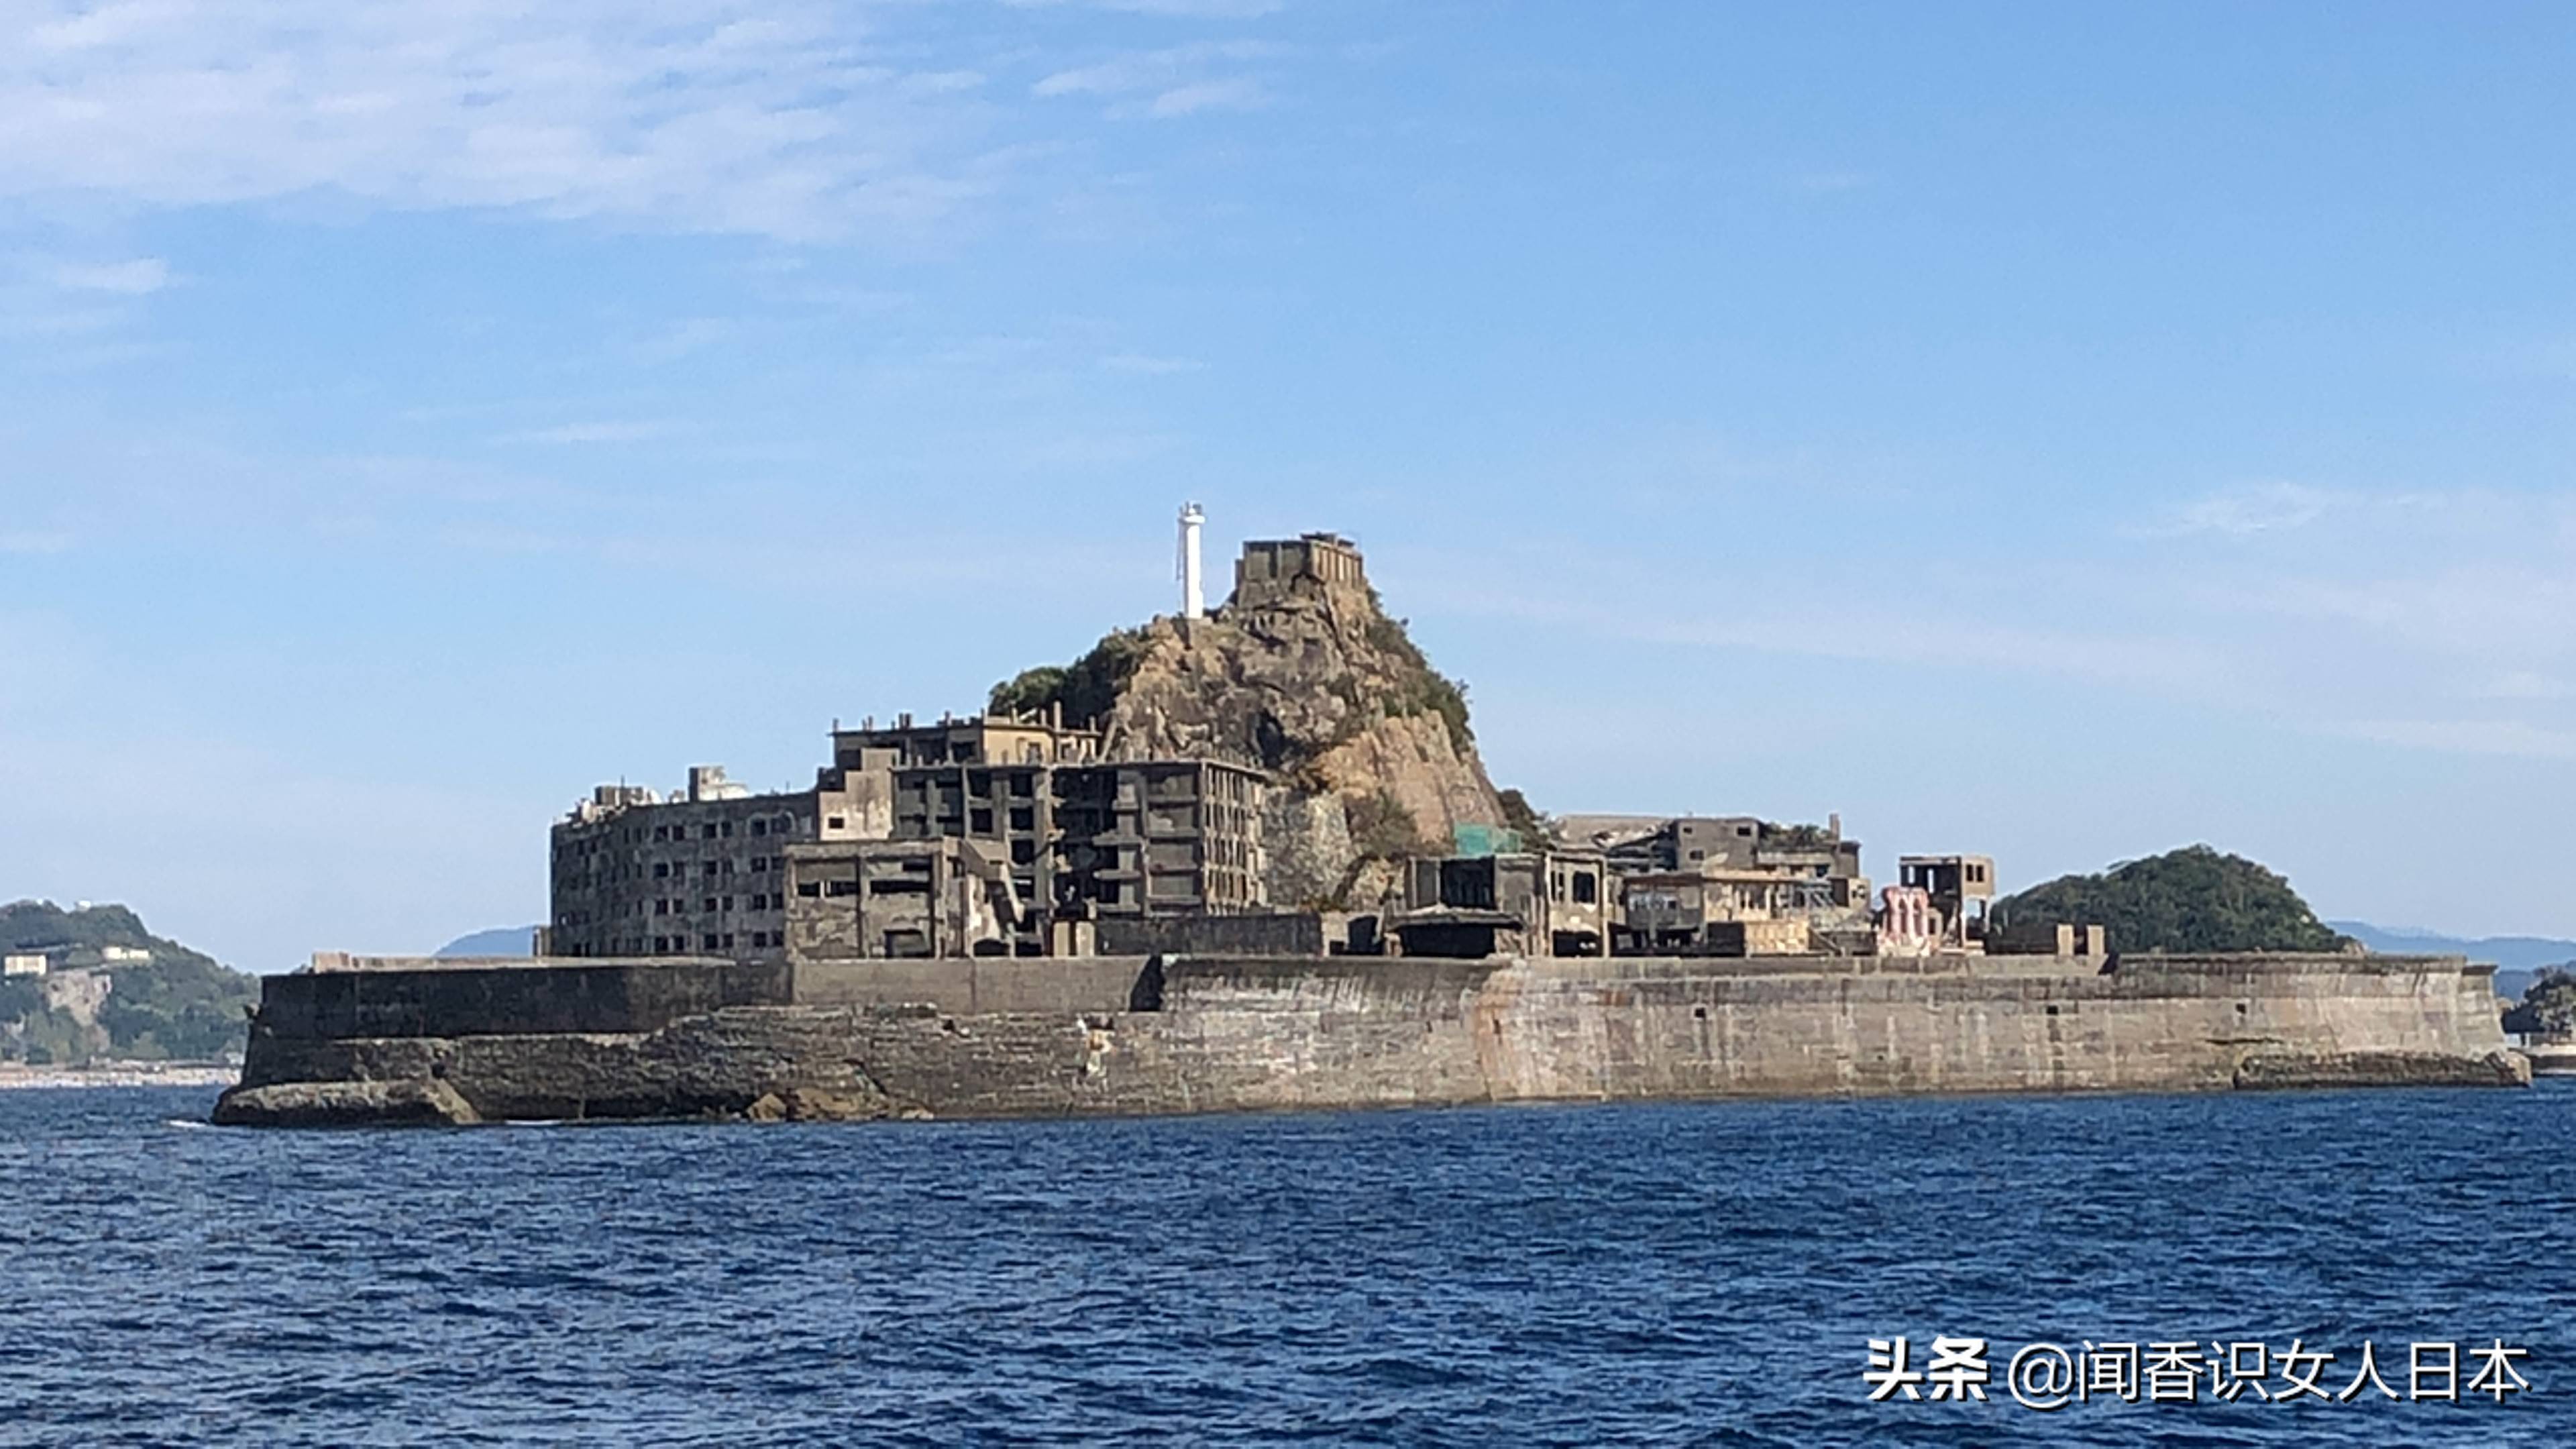 日本军舰岛,一座废弃的无人岛,现在是热门观光地,岛上